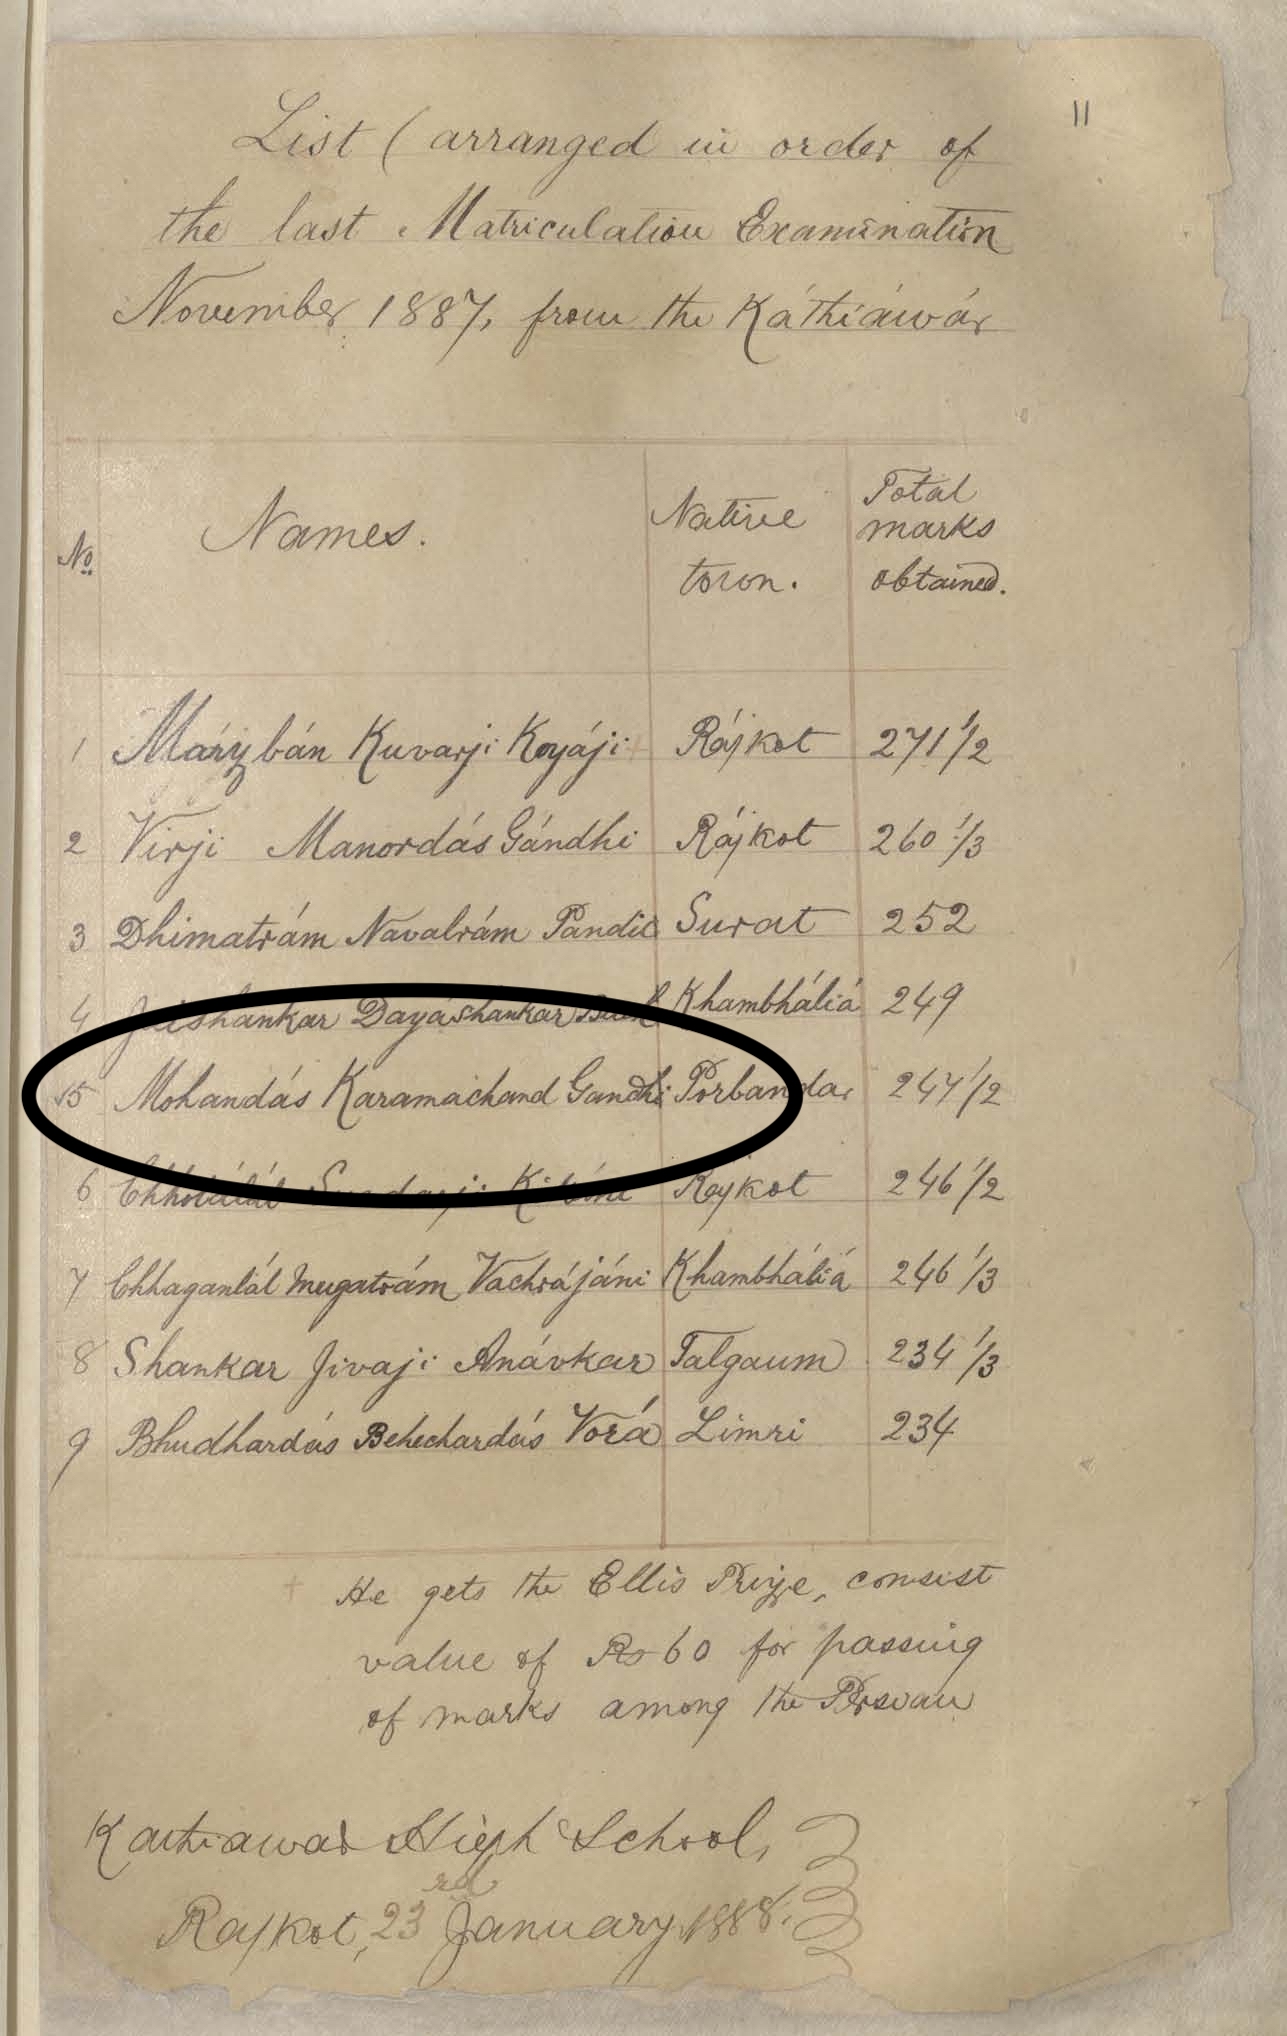 Gandhi’s Matriculation document